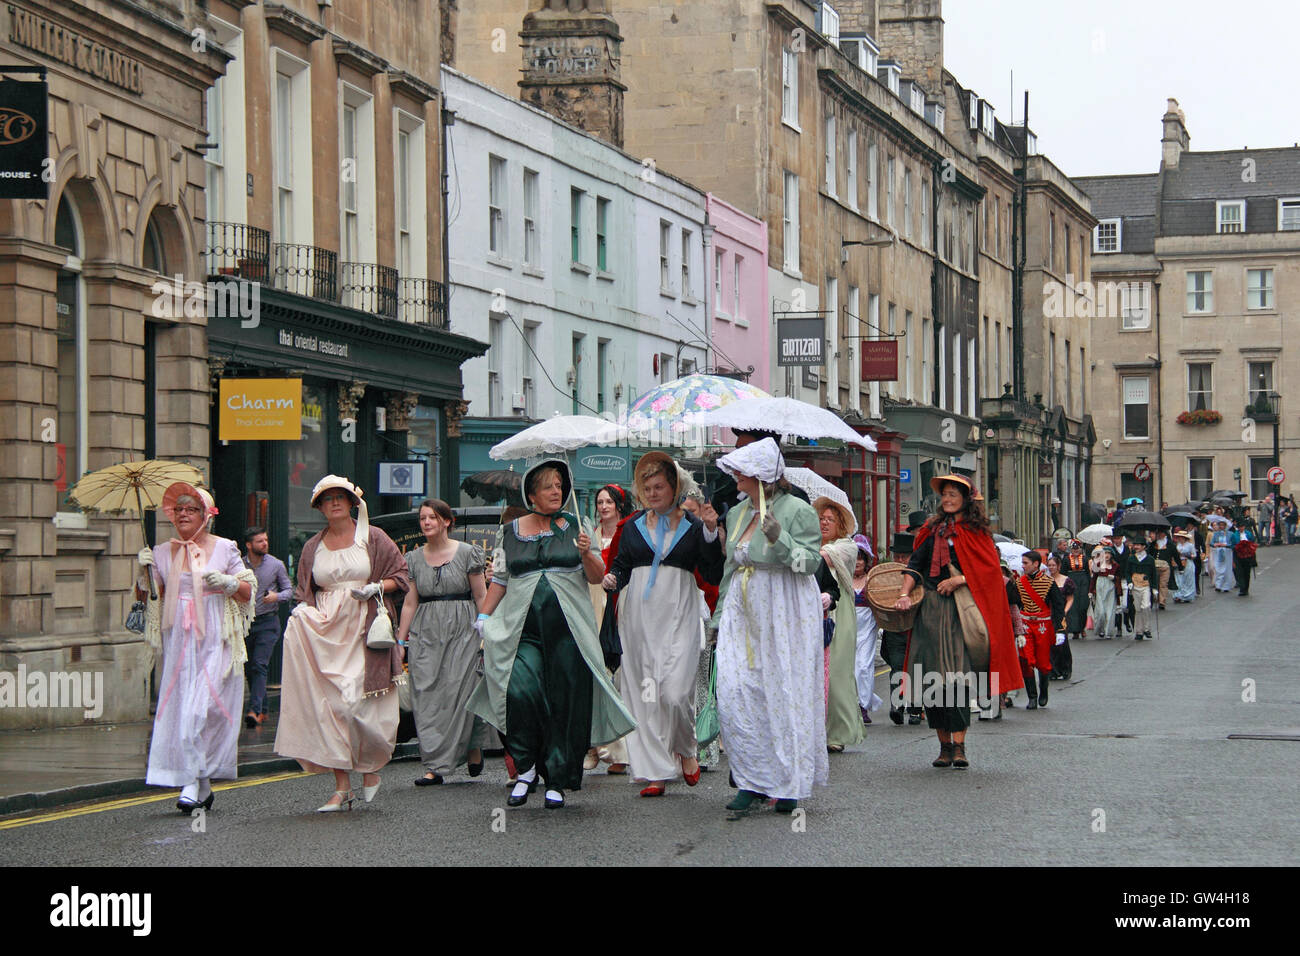 Jane Austen Festival. 9ª-18ª de septiembre de 2016. Bath, Somerset, Inglaterra, Reino Unido. La lluvia no pudieron aplacar los ánimos de los participantes en las murgas de Grand Regency Promenade, el sábado 10 de septiembre de 2016. Crédito: Ian Botella/Alamy Live News Foto de stock